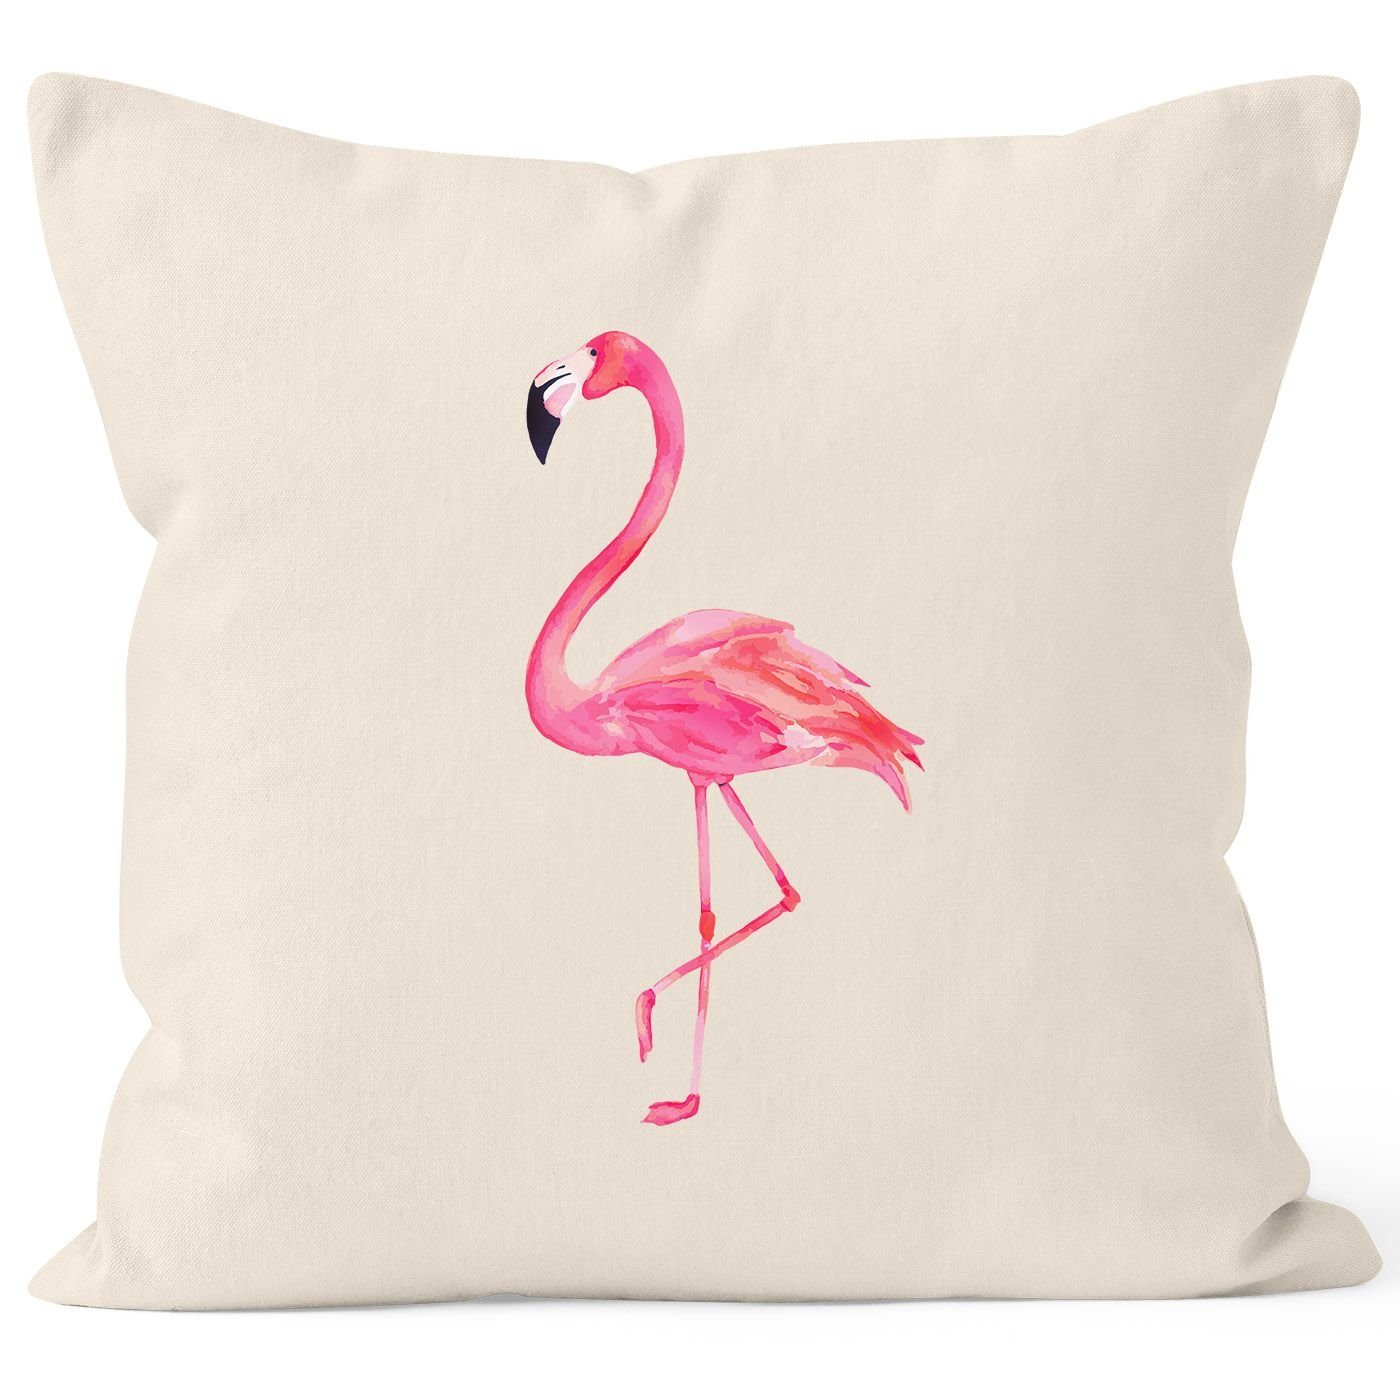 Autiga Dekokissen Kissenhülle Autiga® 40x40 Kissenbezug Dekokissen natur Baumwolle Flamingo